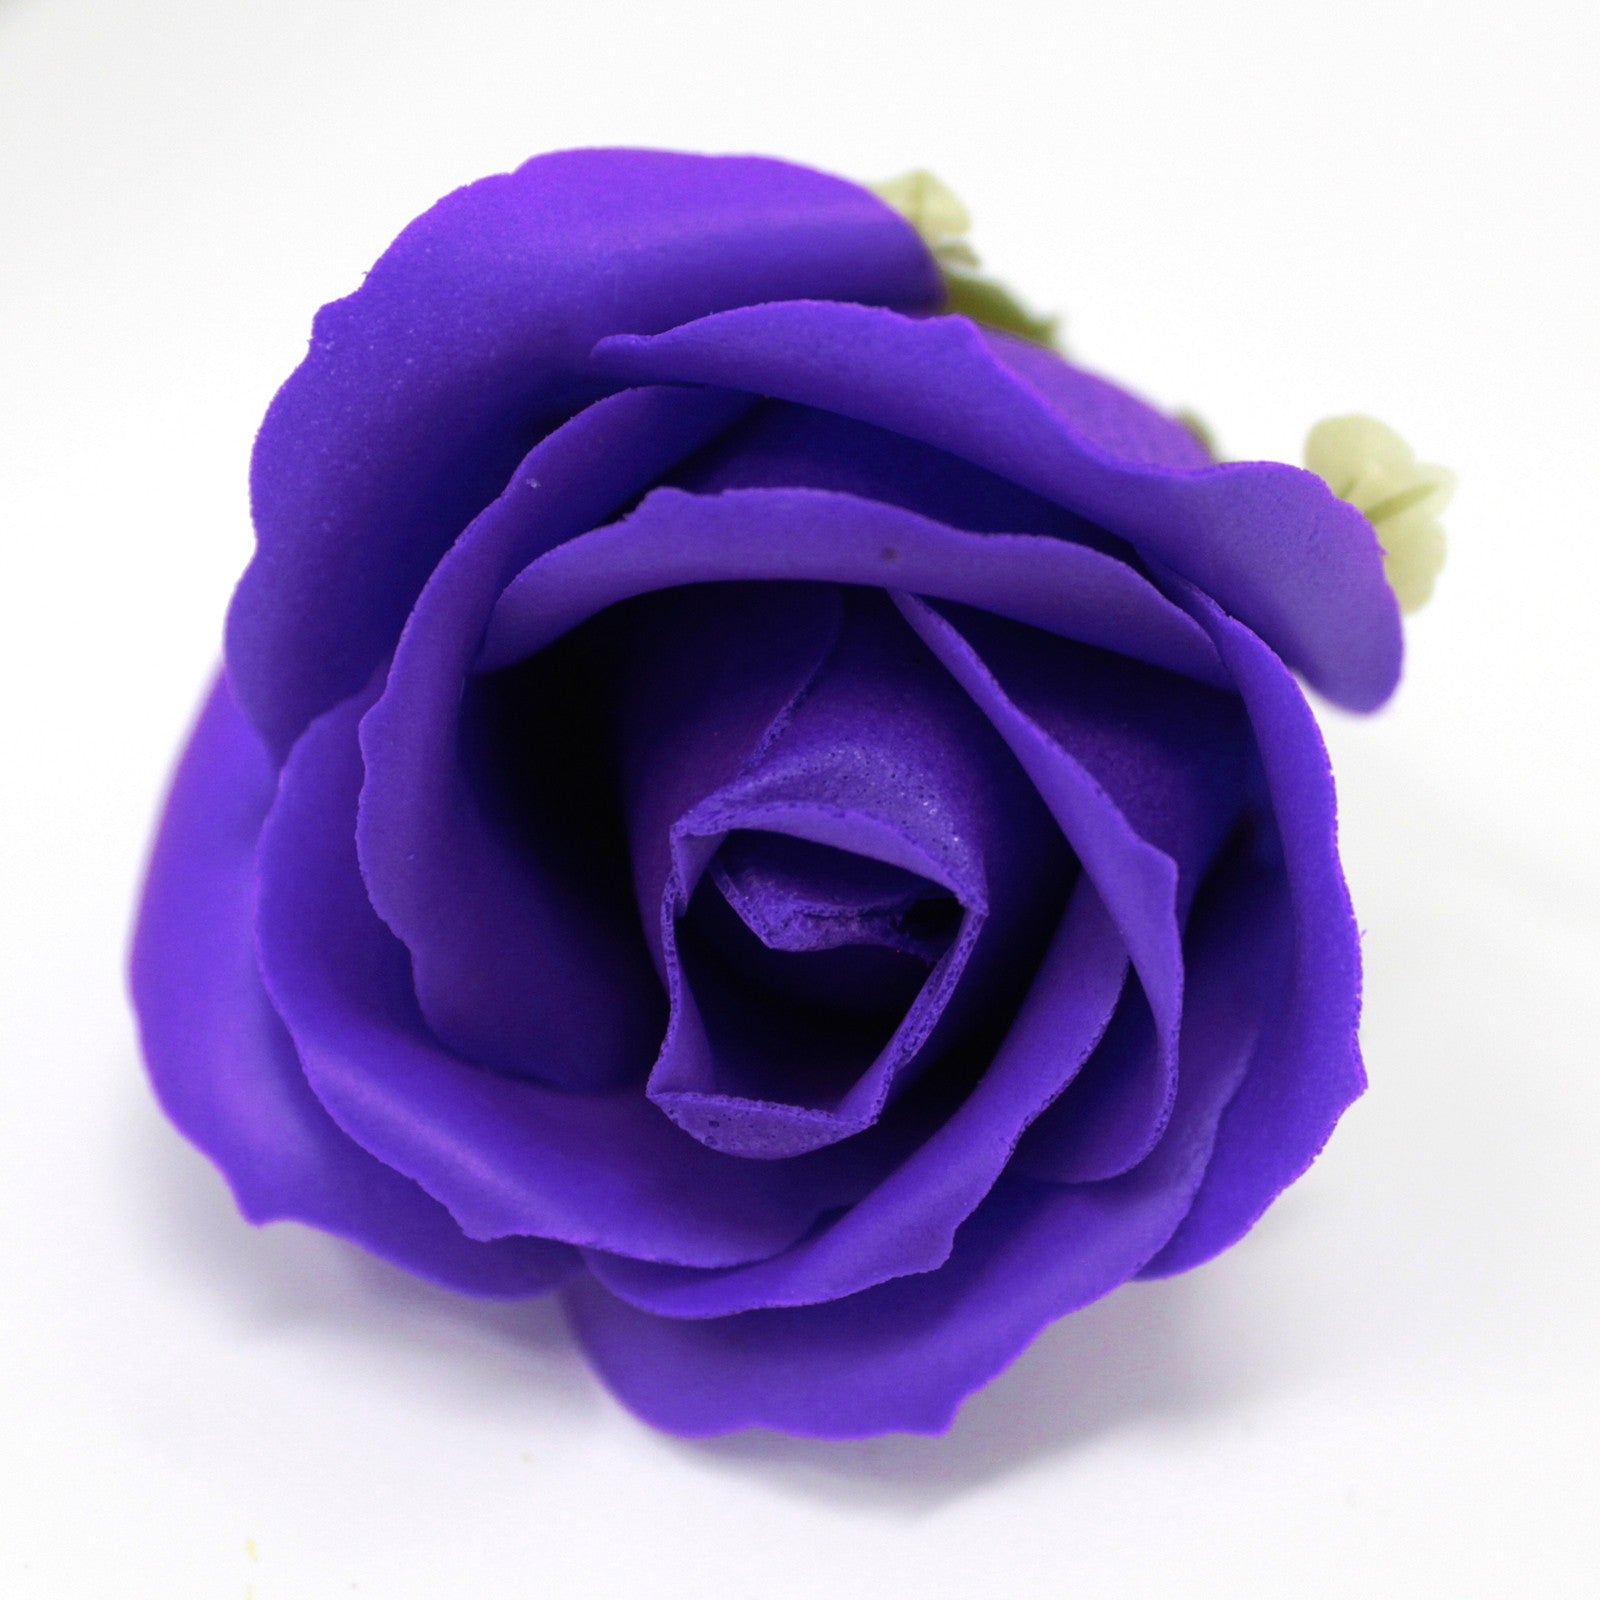 Craft Soap Flowers - Med Rose - Violet x 10 pcs